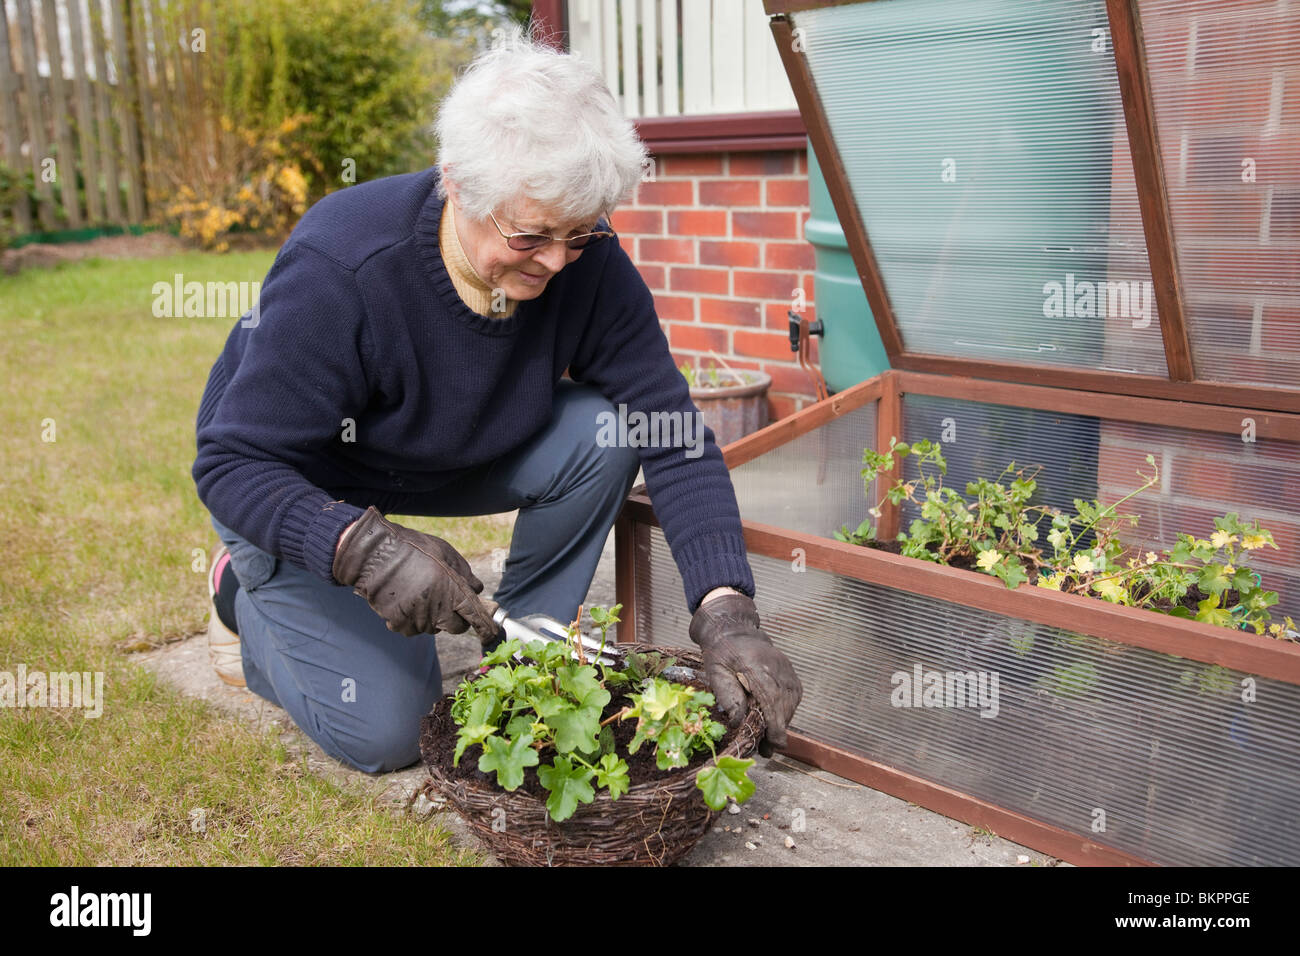 Lifestyle-Bild einer pensionierten aktiven britischen Seniorin Rentnerin OAP-Dame, die Pflanzen in einem hängenden Korb in einem heimischen Hintergarten anpflanzen. Großbritannien Stockfoto